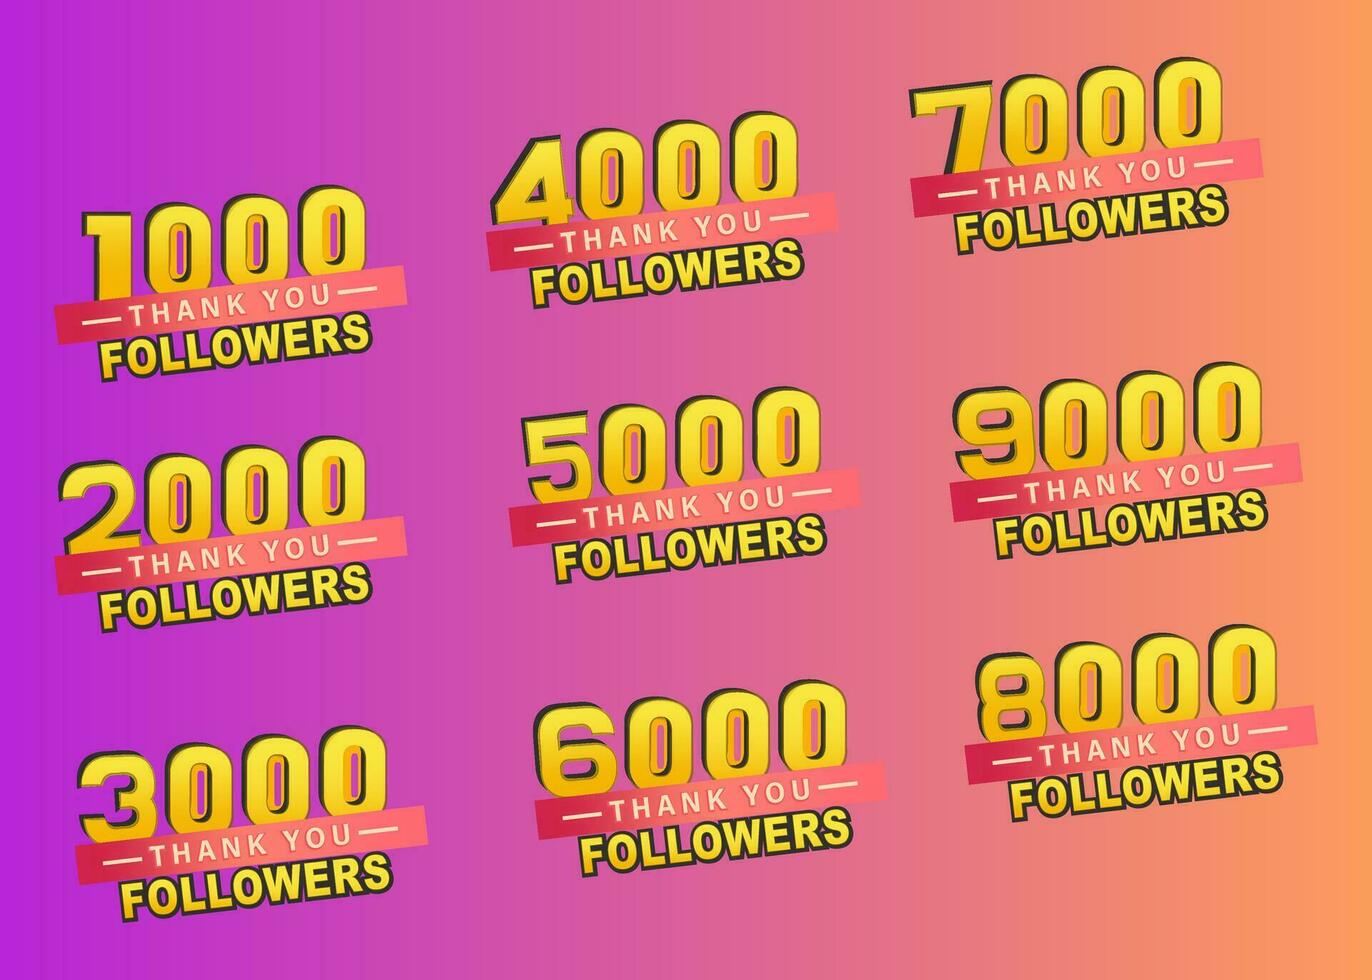 dank u 1000 naar 9000 volgers banier, bedankt volgers felicitatie kaart, helling achtergrond, vector illustratie voor sociaal netwerken, reeks banier